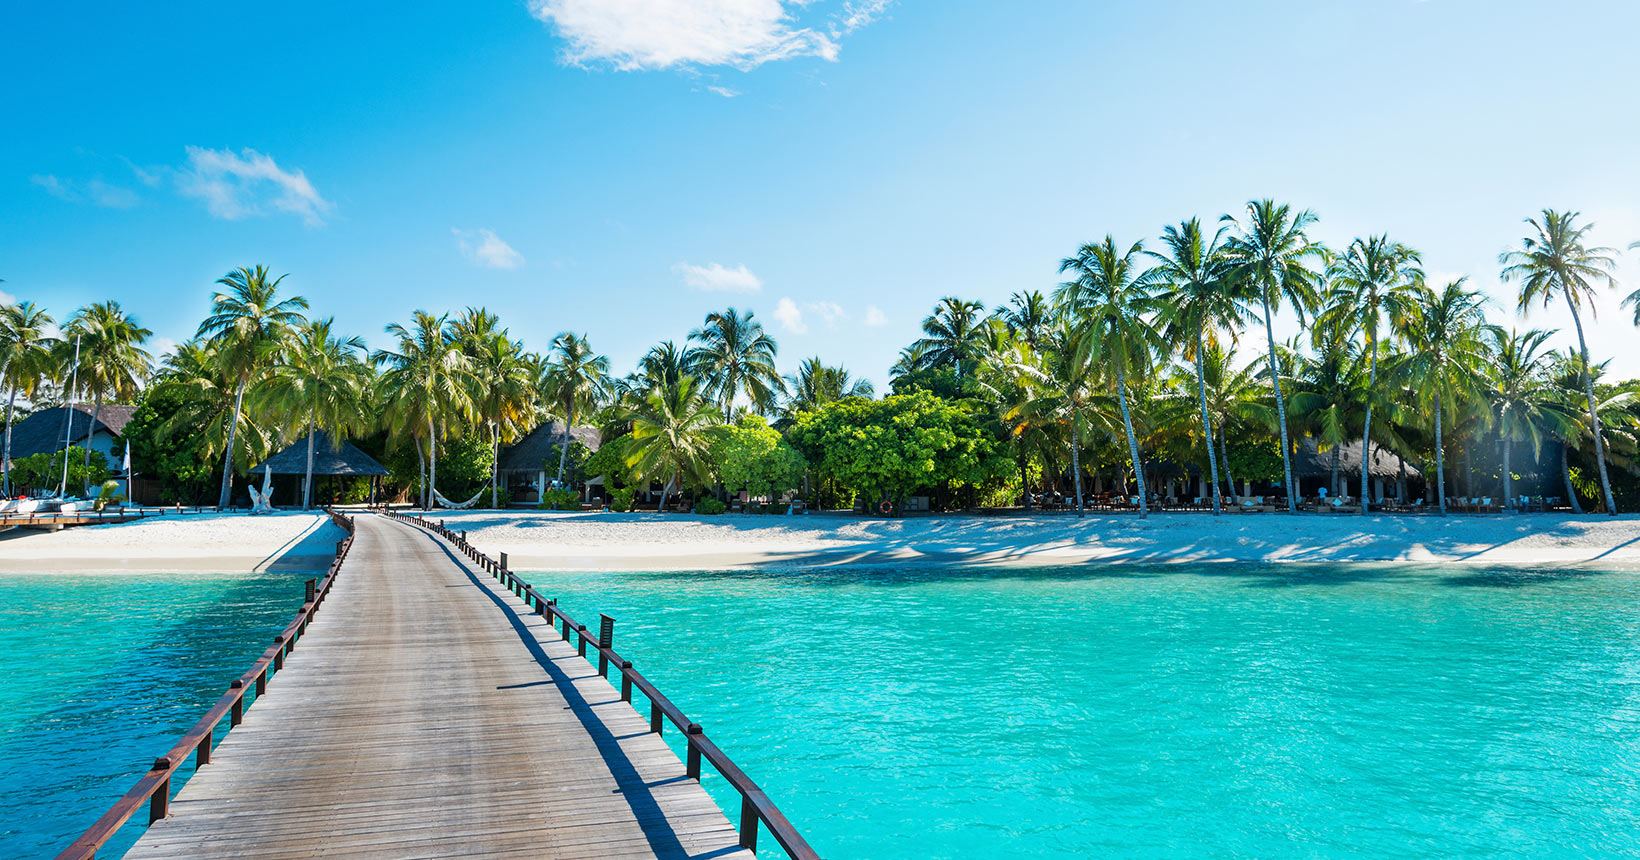 Destino dos sonhos: conheça as Ilhas Maldivas